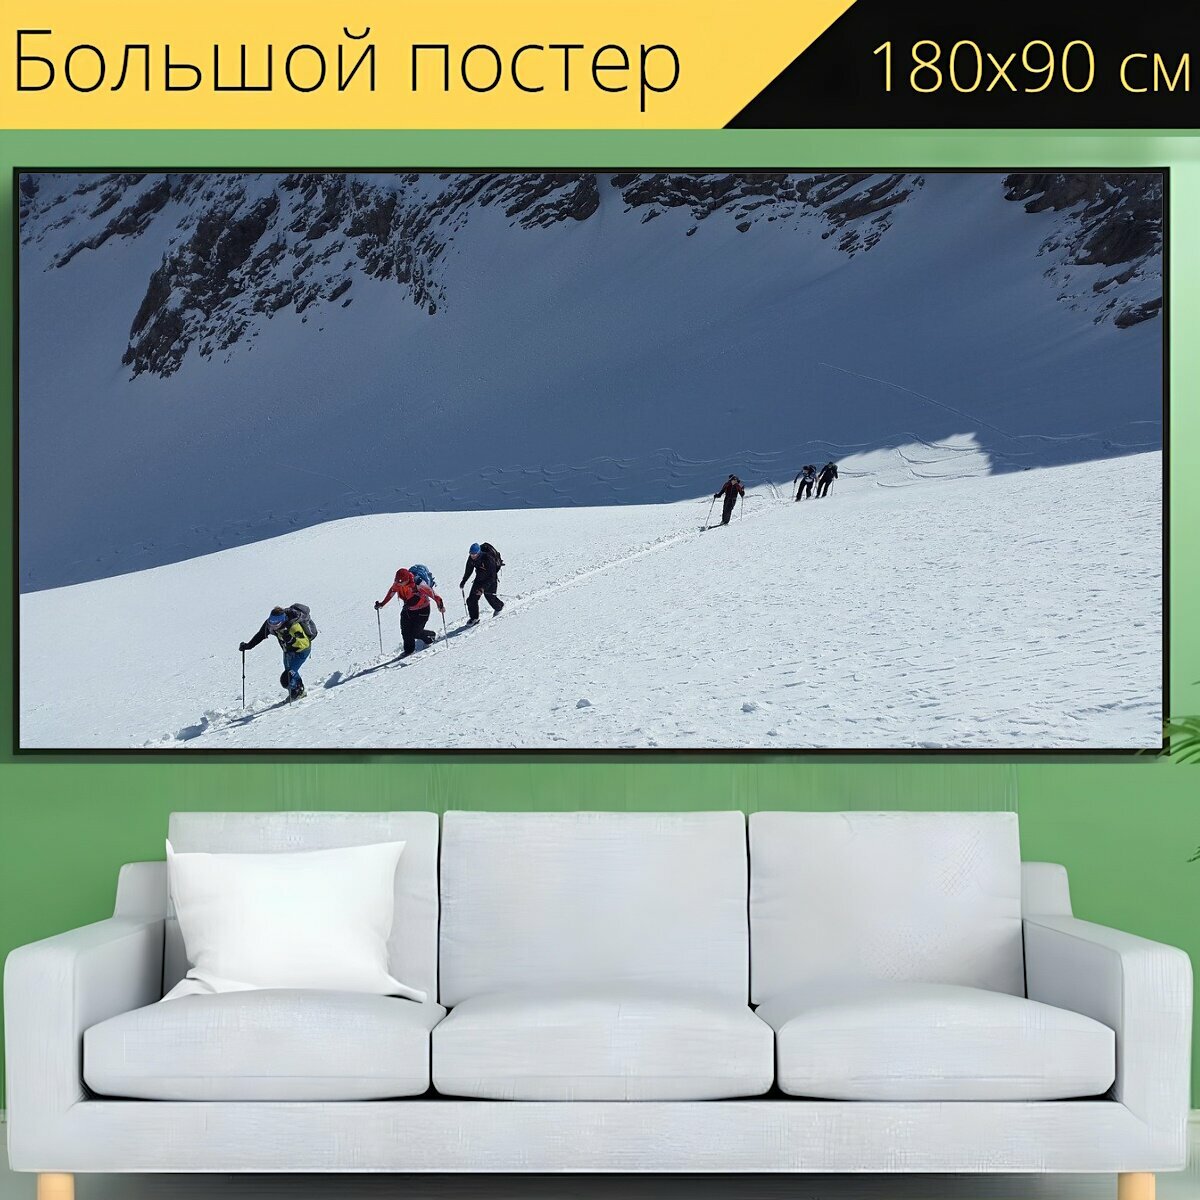 Большой постер "Лыжный альпинизм, бэккантри лыжно, зимние виды спорта" 180 x 90 см. для интерьера